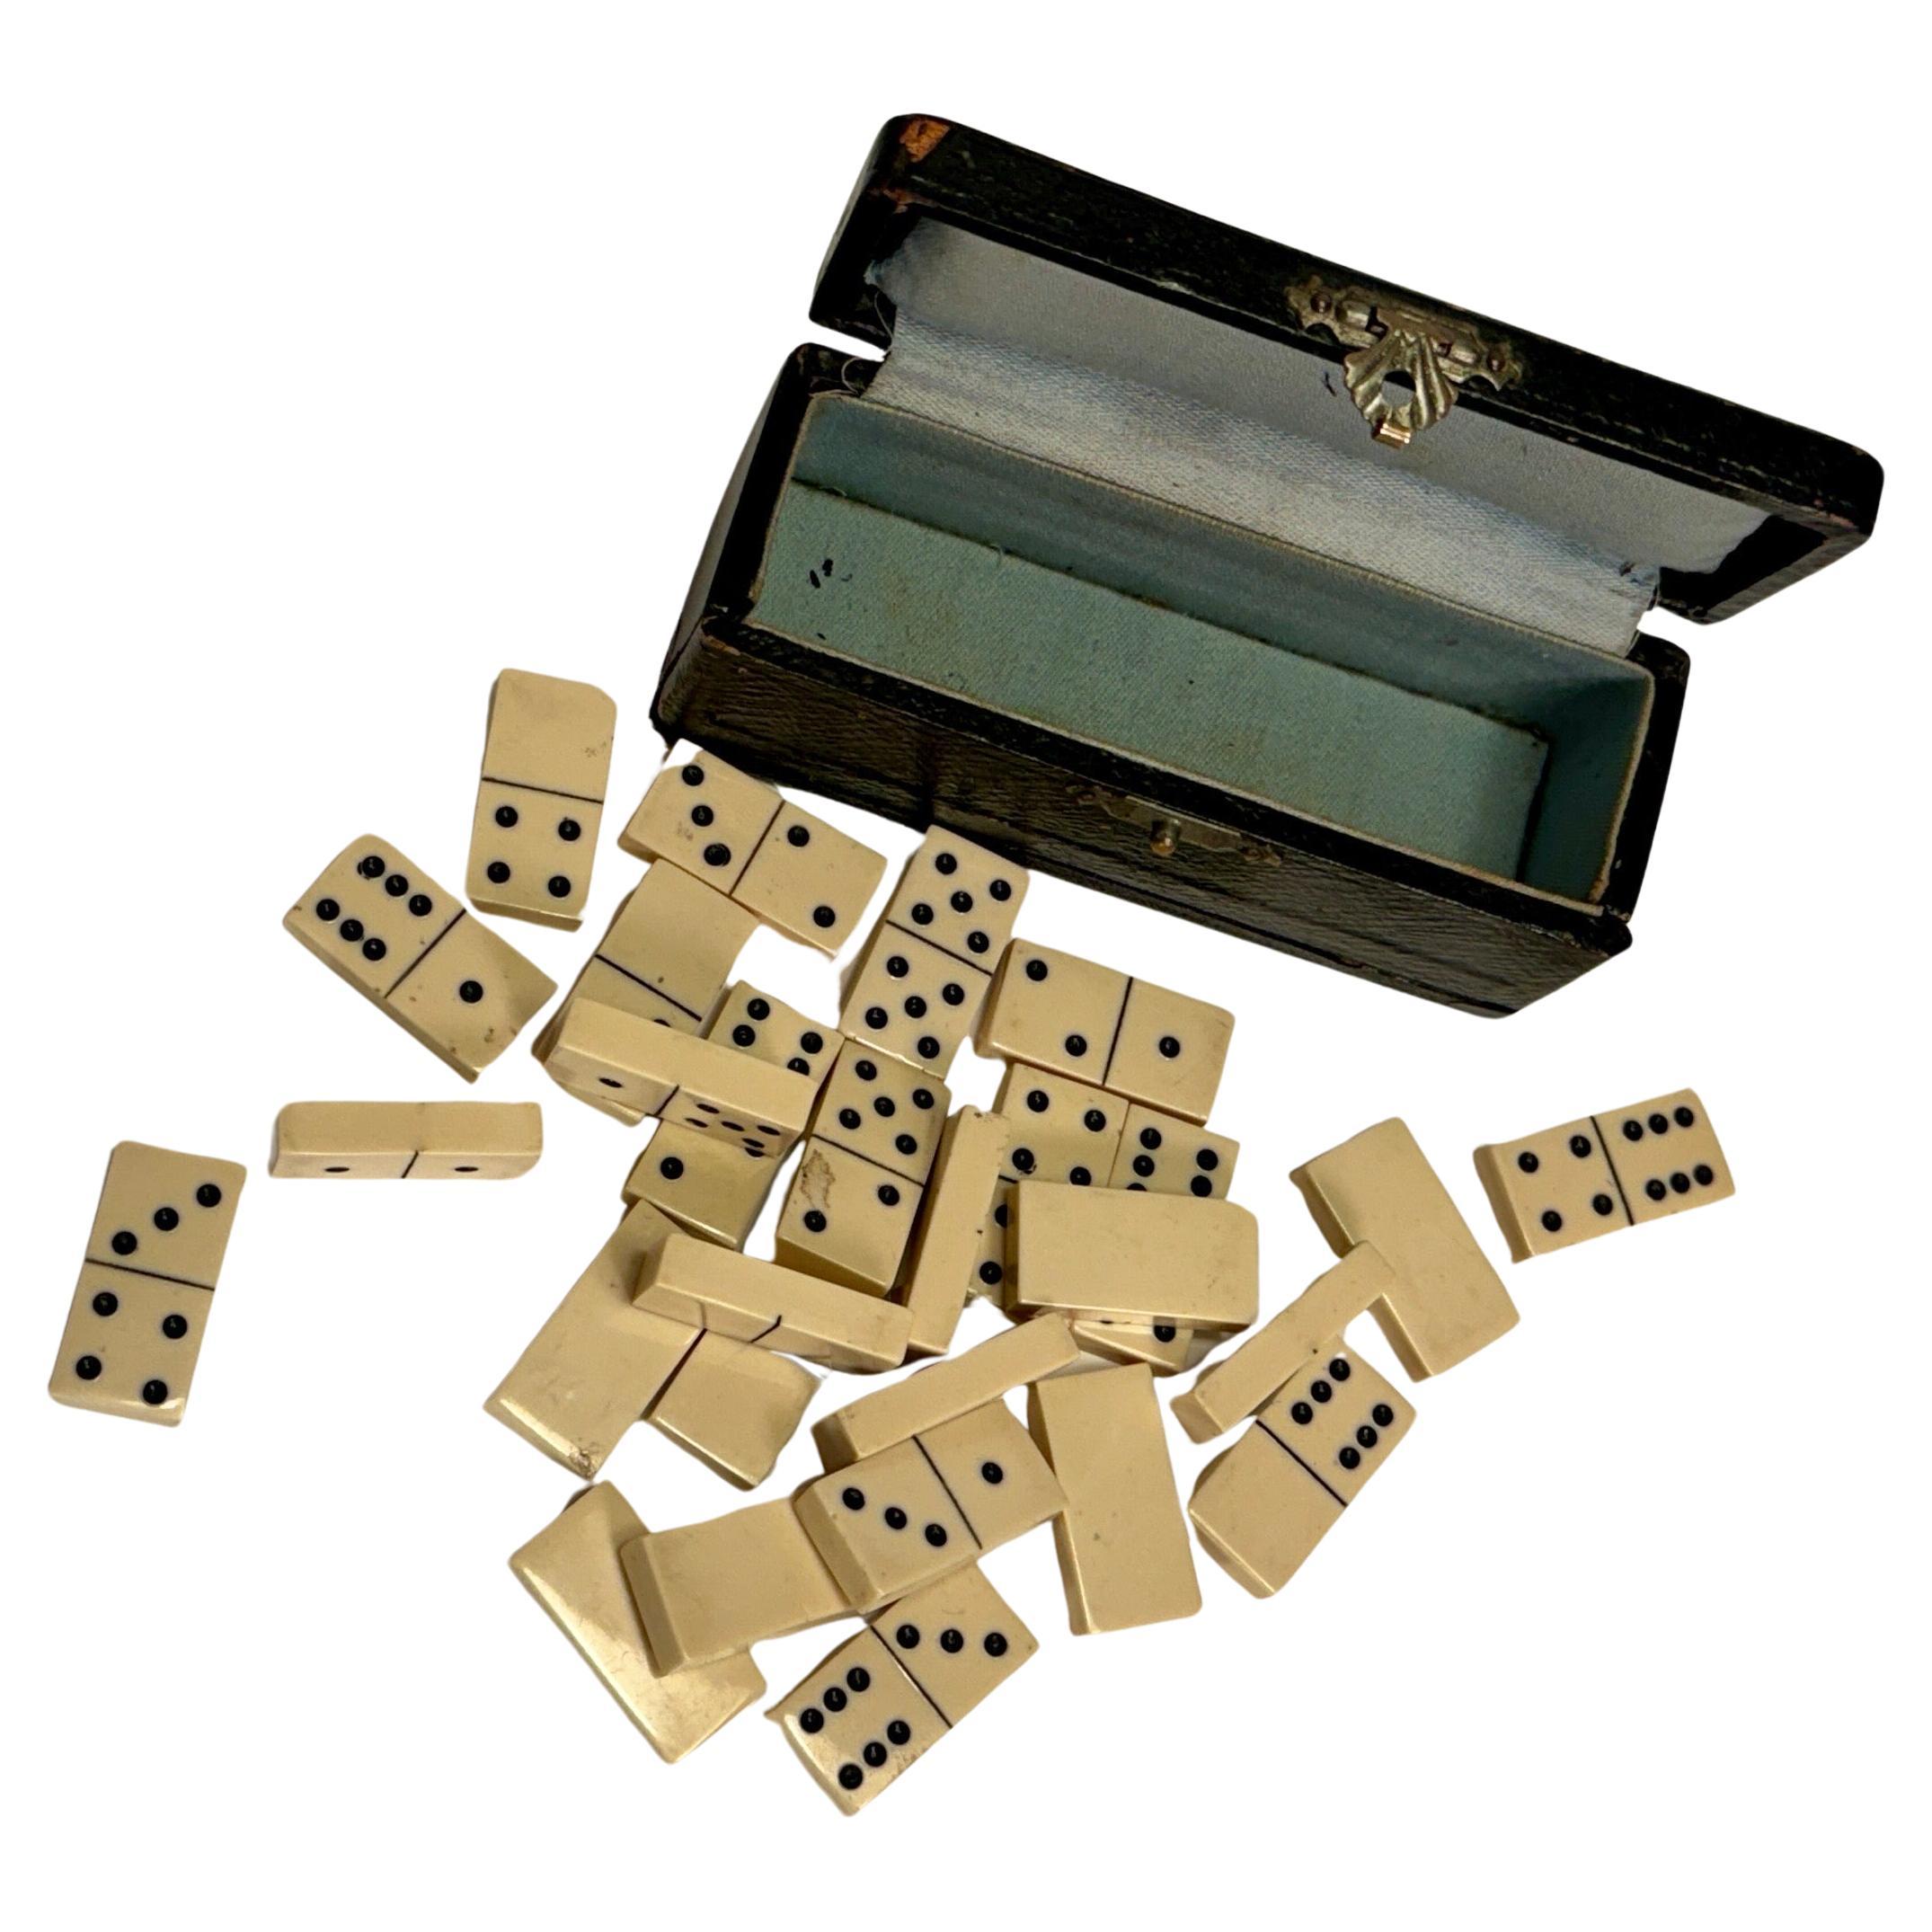 Kleines Dominos-Brettspiel in Reisegröße mit 28 Teilen in einer kleinen schwarzen Lederschachtel.
Jedes Stück misst 1,1 x 0,6 x 0,2 Zoll.